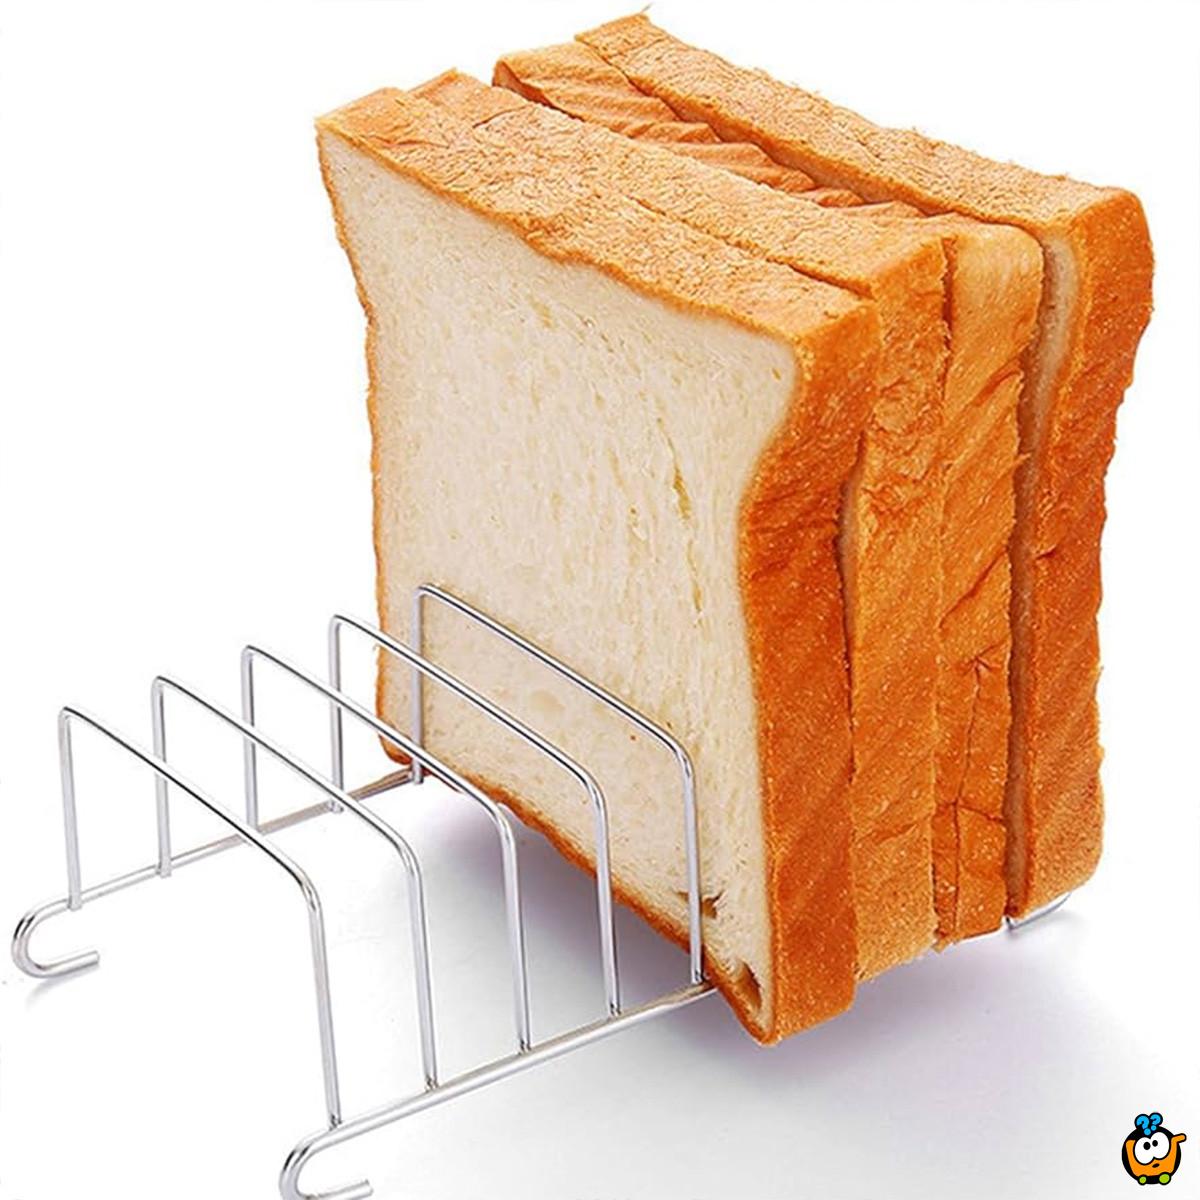 Toast Rack - metalni stalak za tostiranje hleba